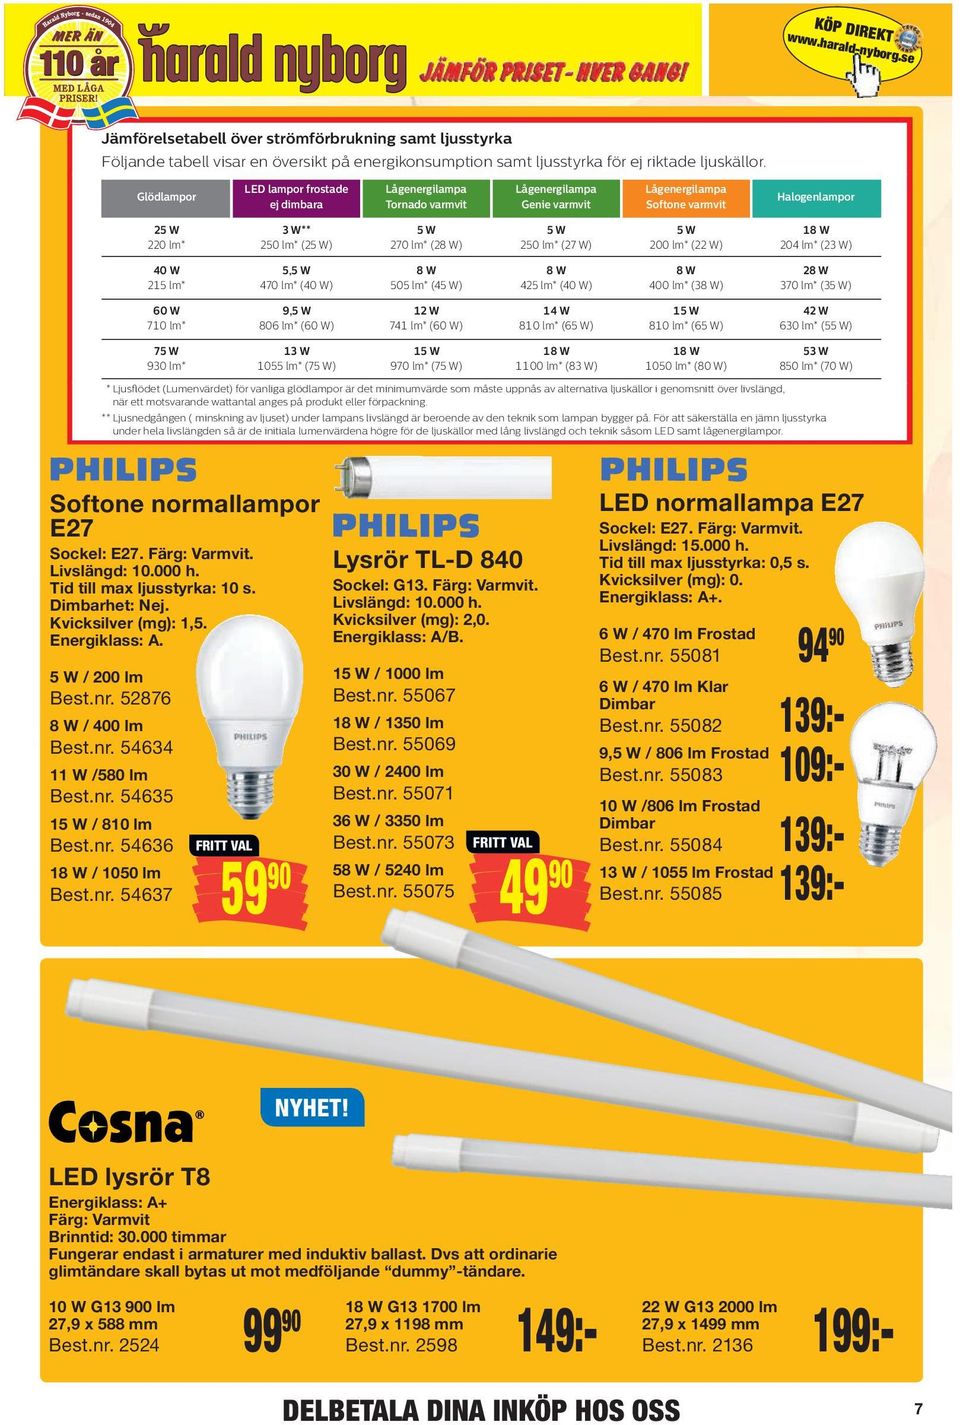 Följande Följande tabell tabell visar visar en en översikt översikt på på energikonsumption energikonsumption samt samt ljusstyrka ljusstyrka för för ej ej riktade riktade ljuskällor.